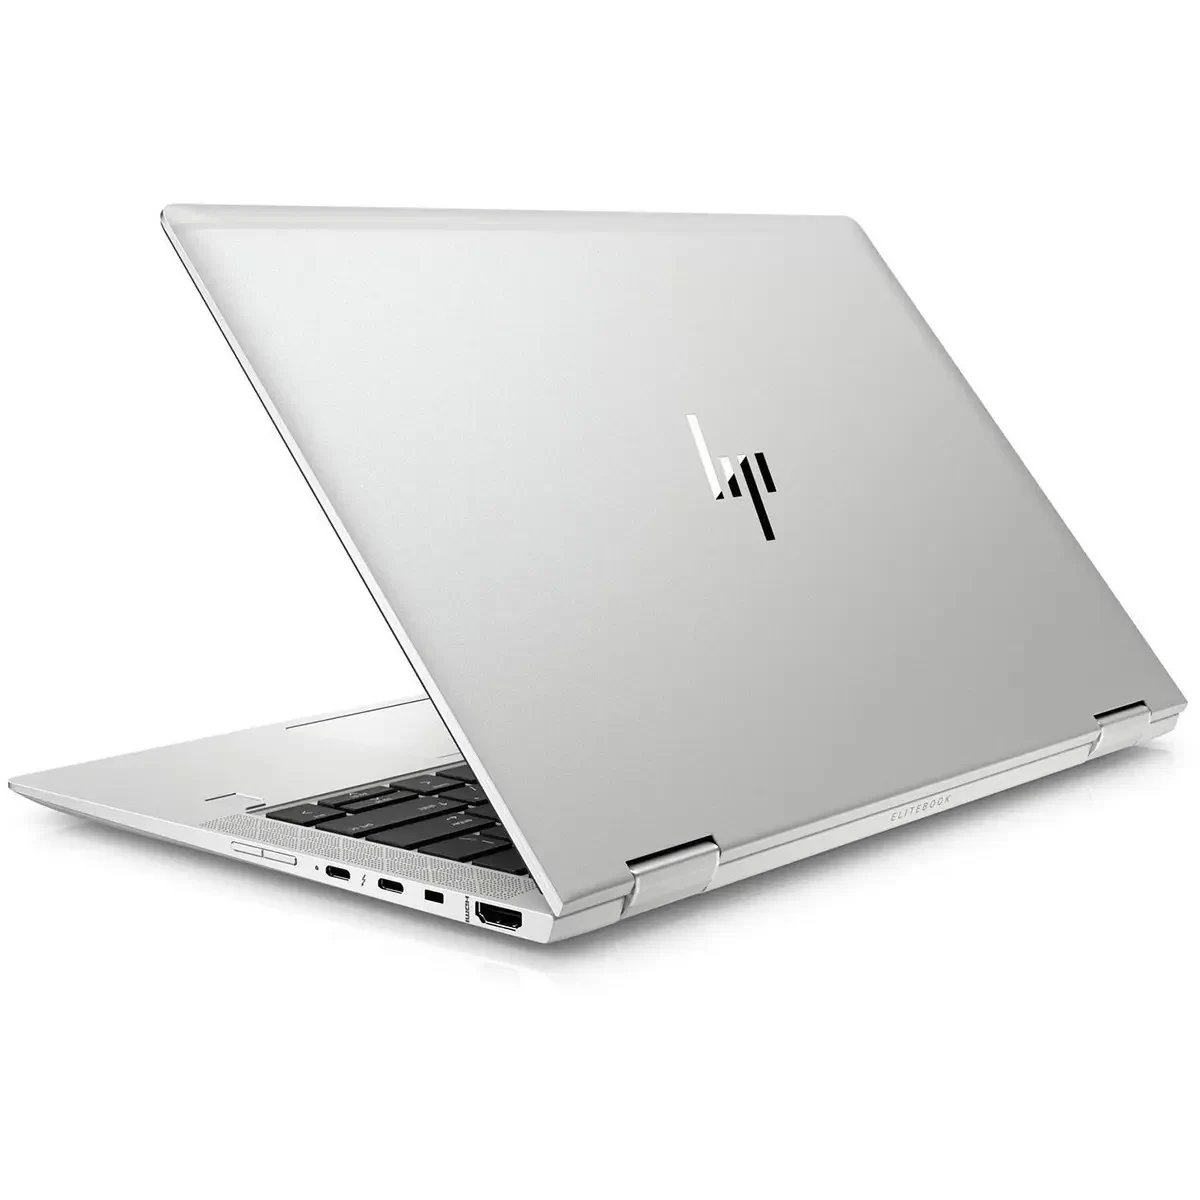 HP EliteBook x360 1030 G3 Core i7 8650U 8Go 512 Go NVMe 13.3″ Full HD Rotation Tactile